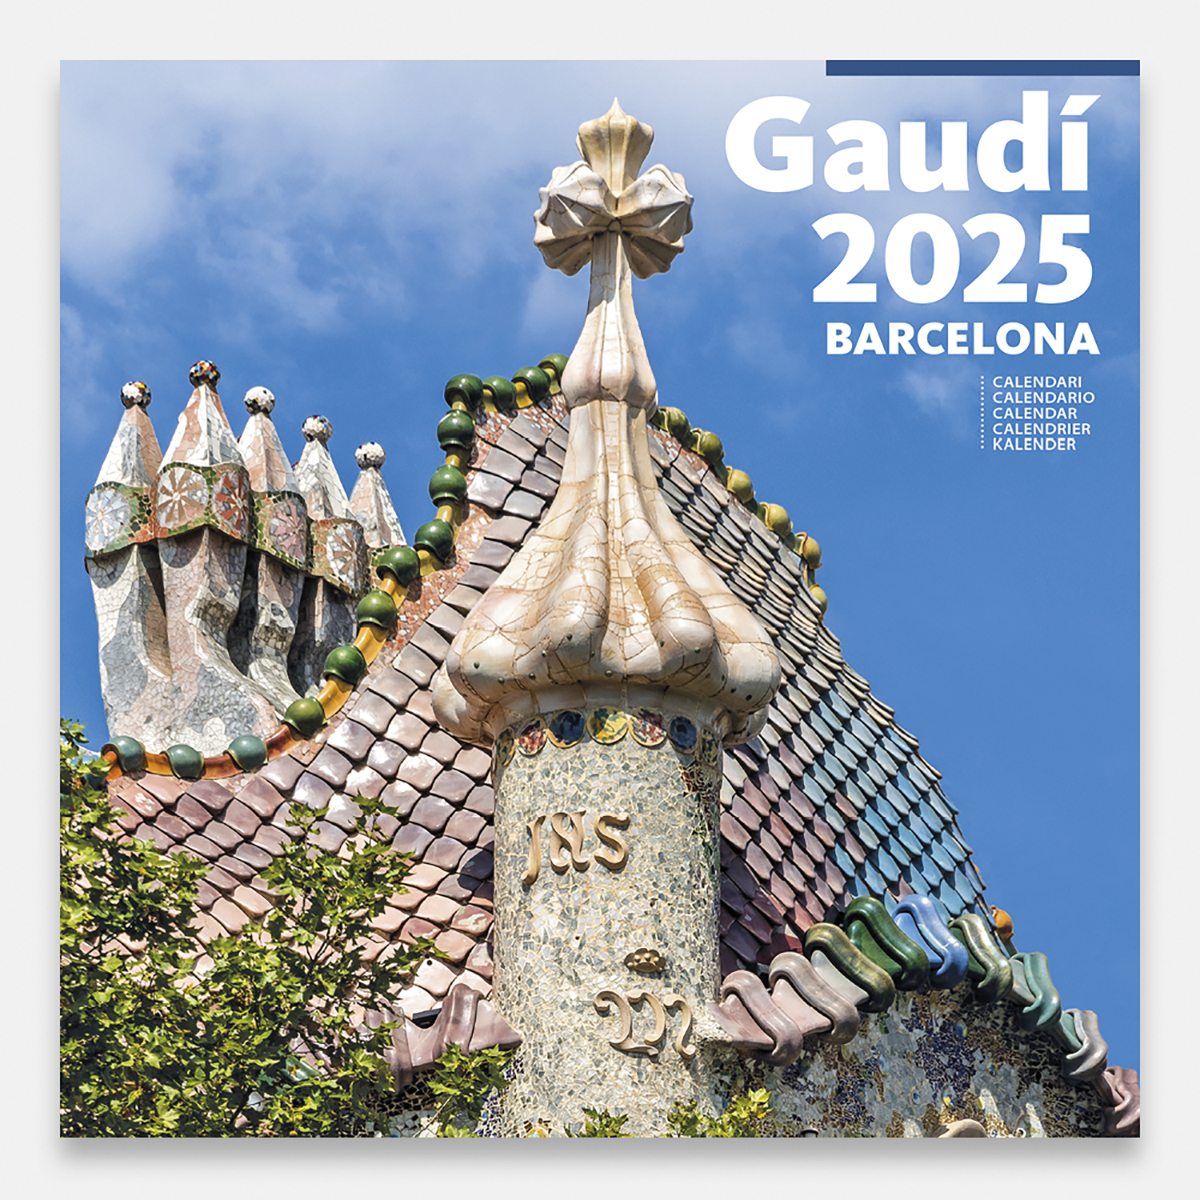 Calendari 2025 Gaudí-1 A (Batlló) 25gg1 a calendario pared 2025 gaudi batllo